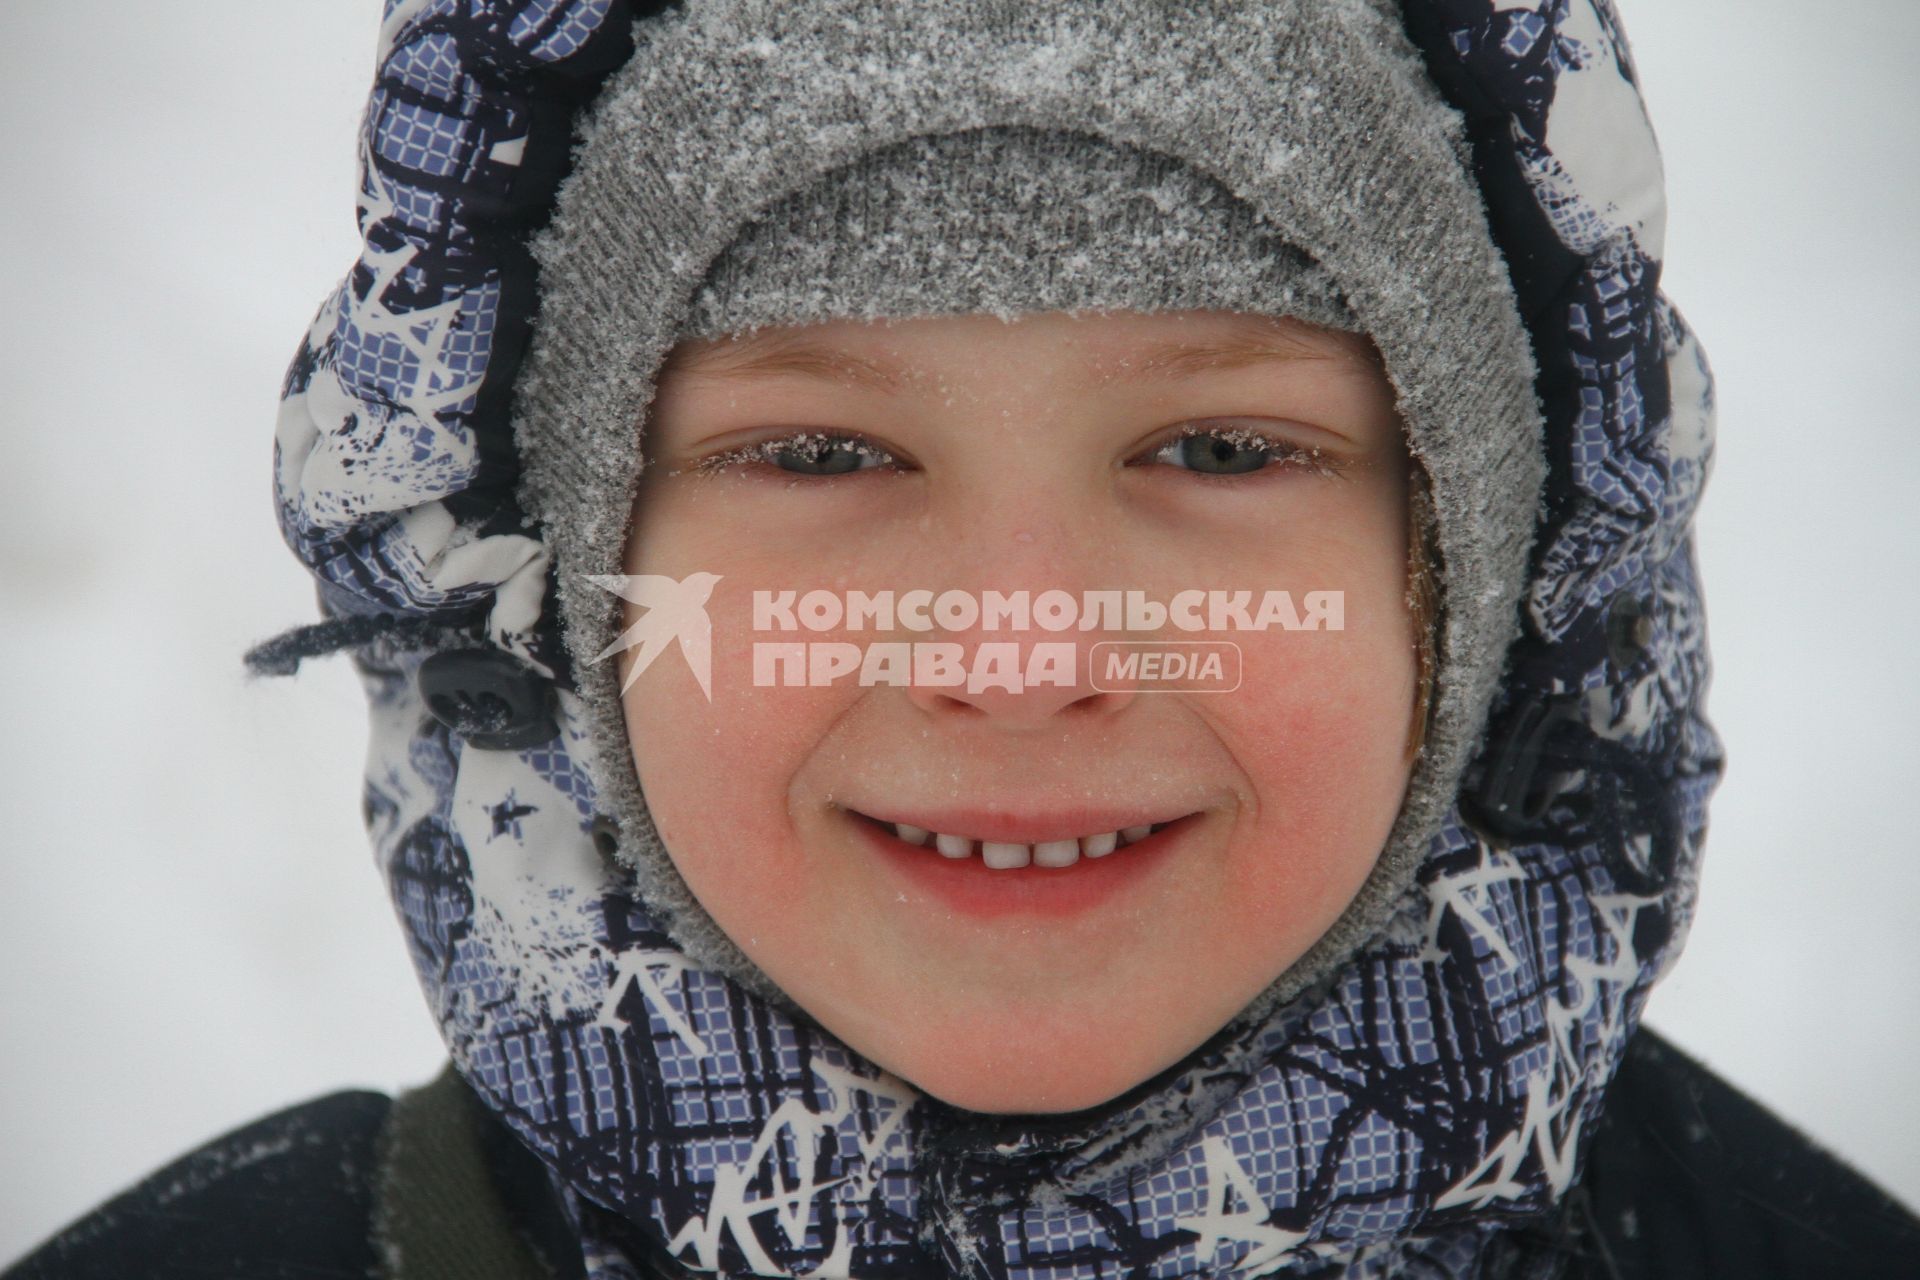 Нижний Новгород.  Мальчик в теплой шапке улиц города.